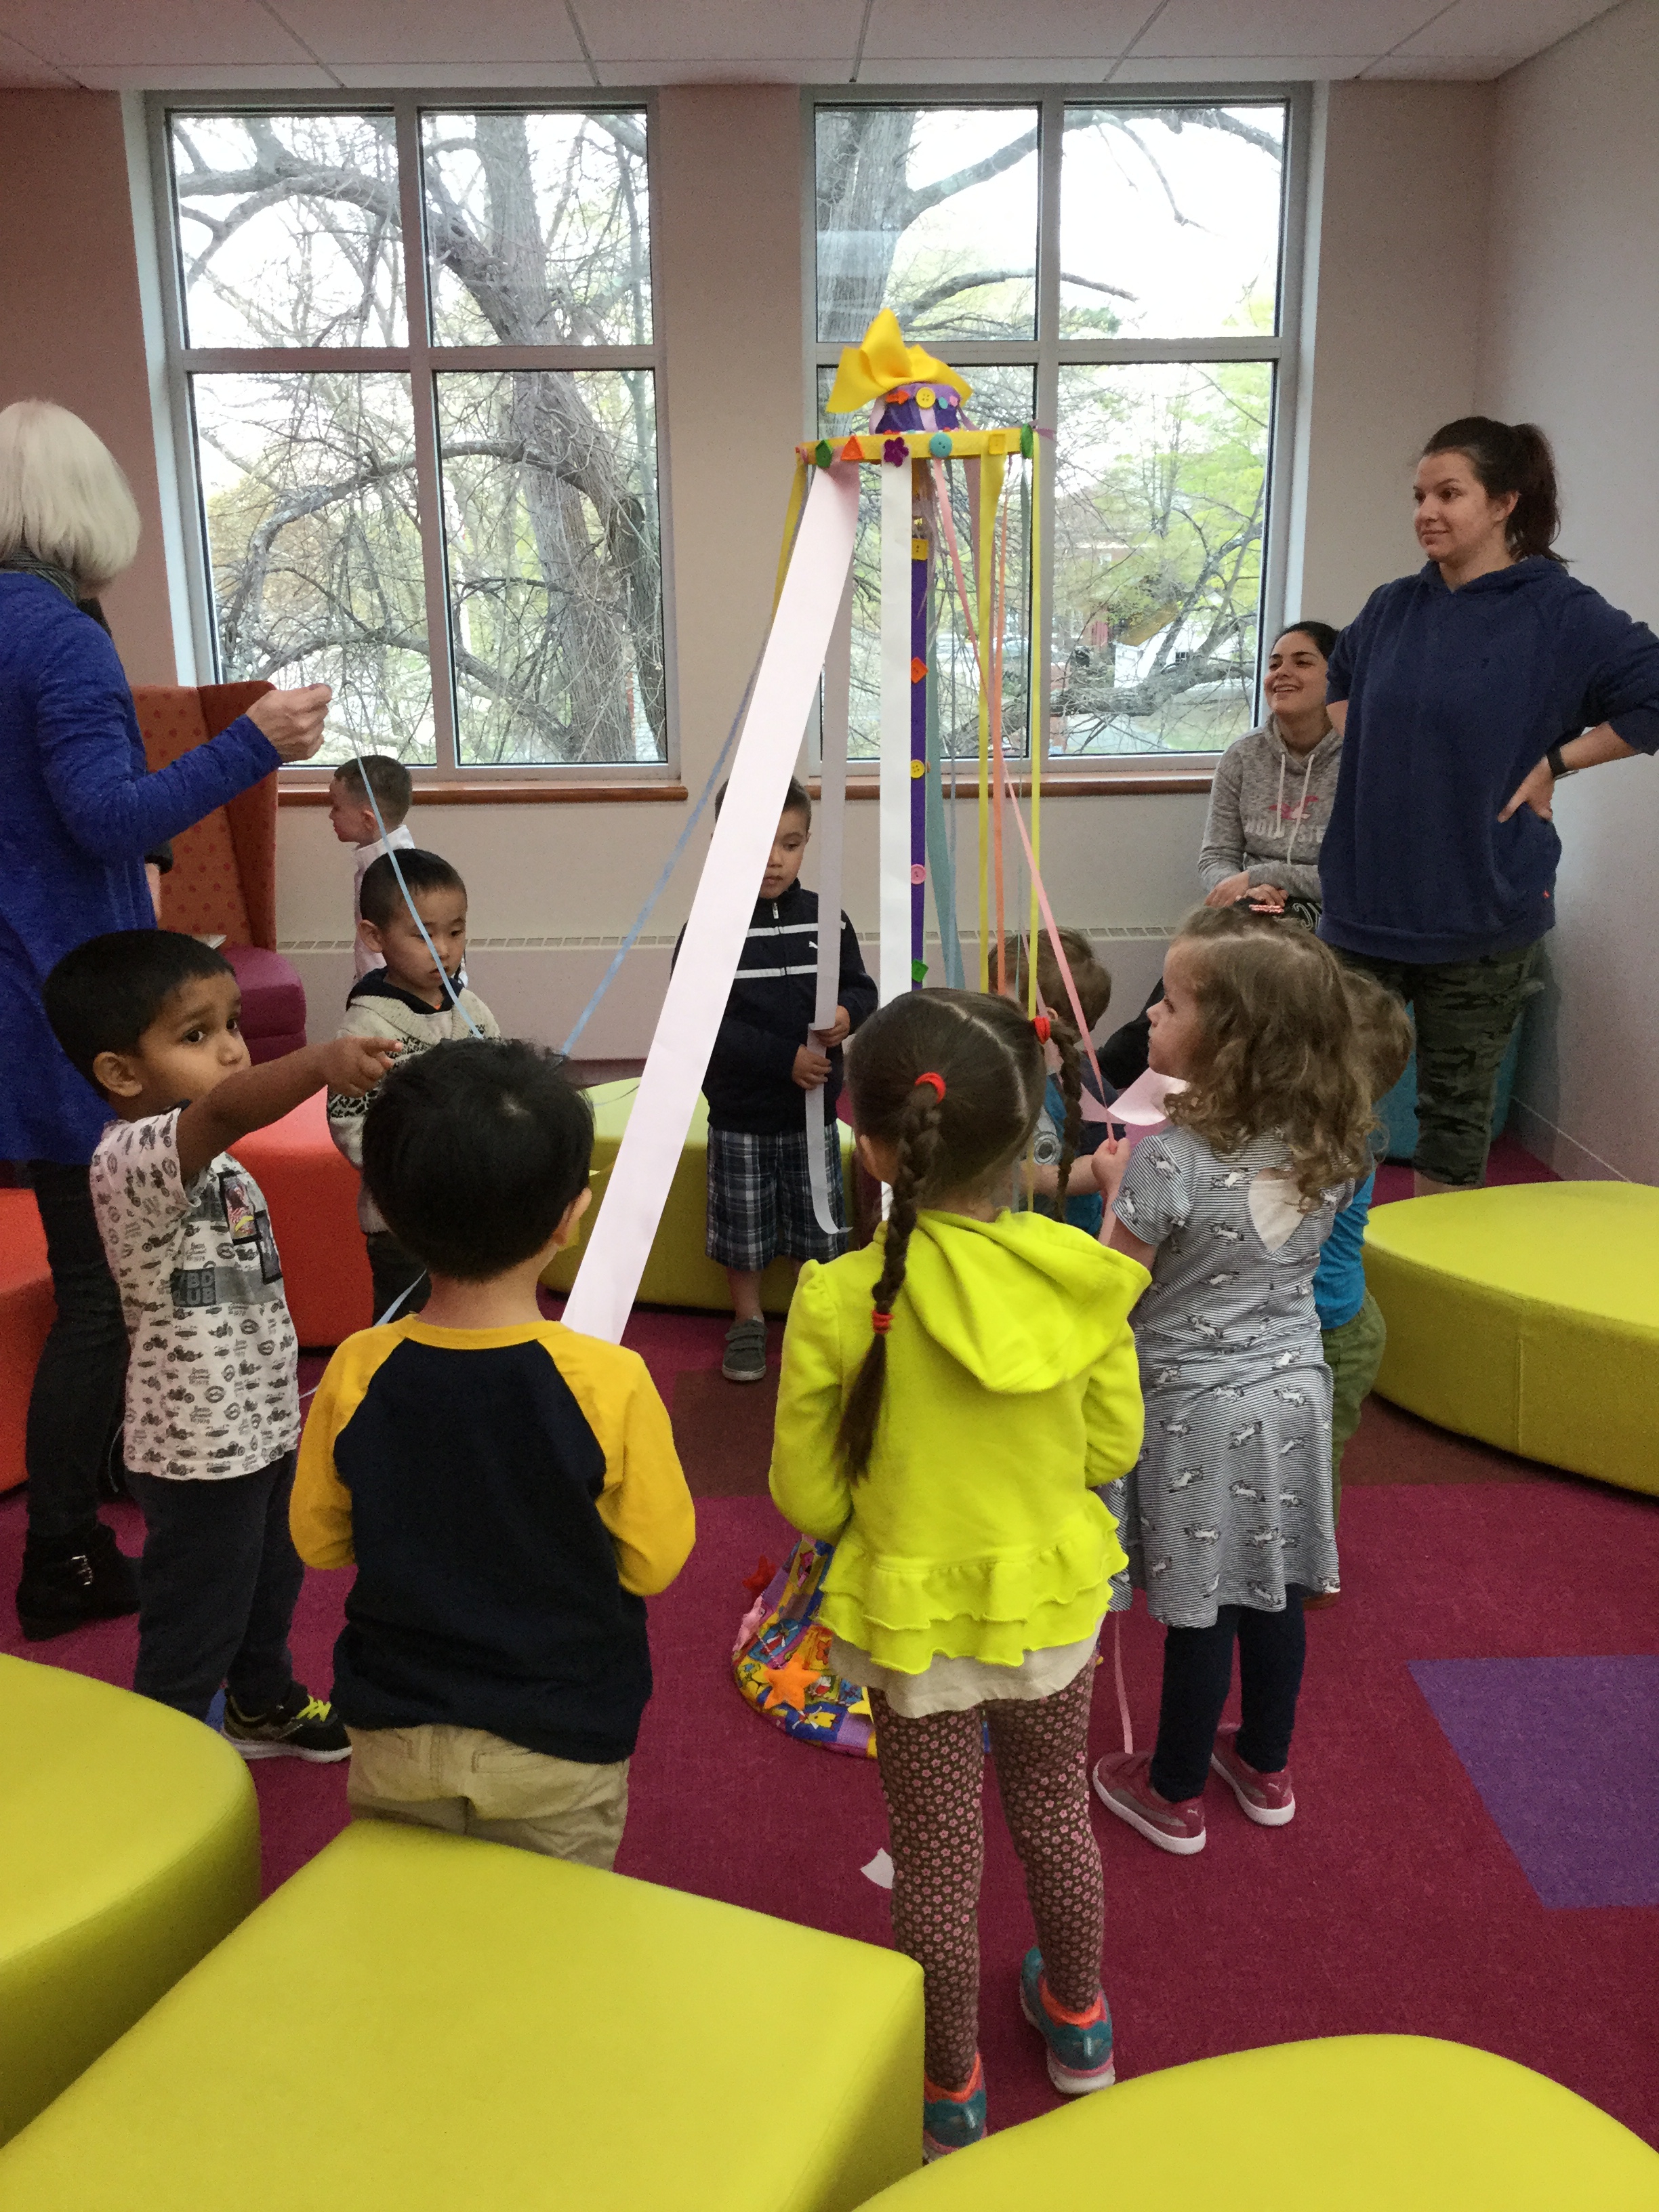 Children around maypole in Children's Room